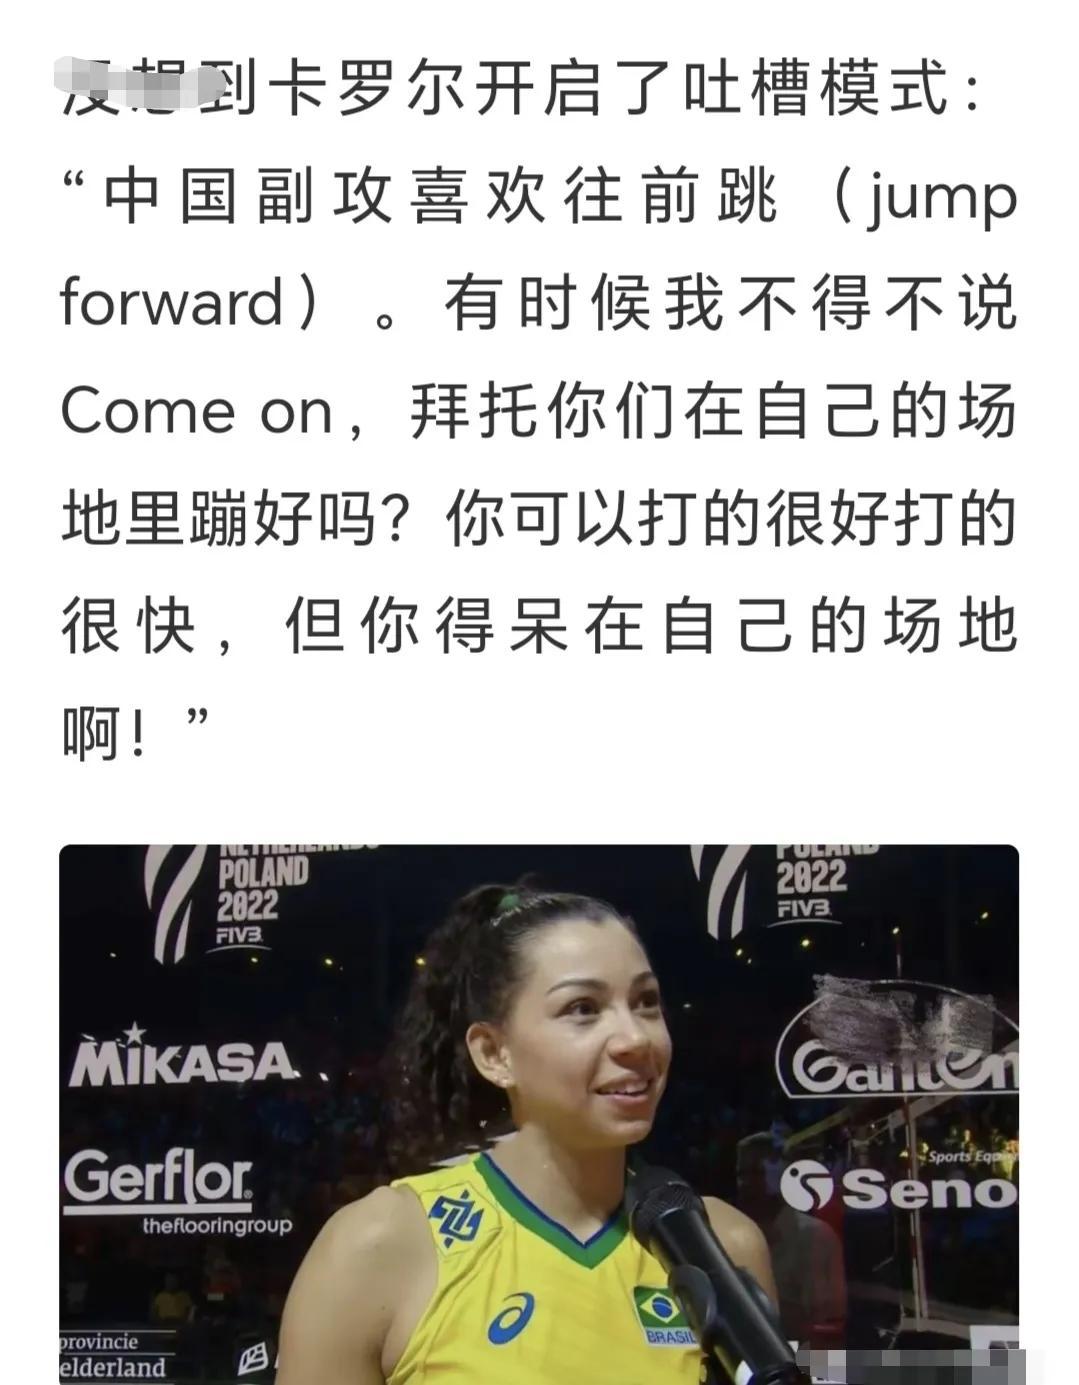 巴西女排“墙姐”卡罗尔曾这样评价中国队的副攻拦网，你觉得她说的有道理吗？

大家(2)